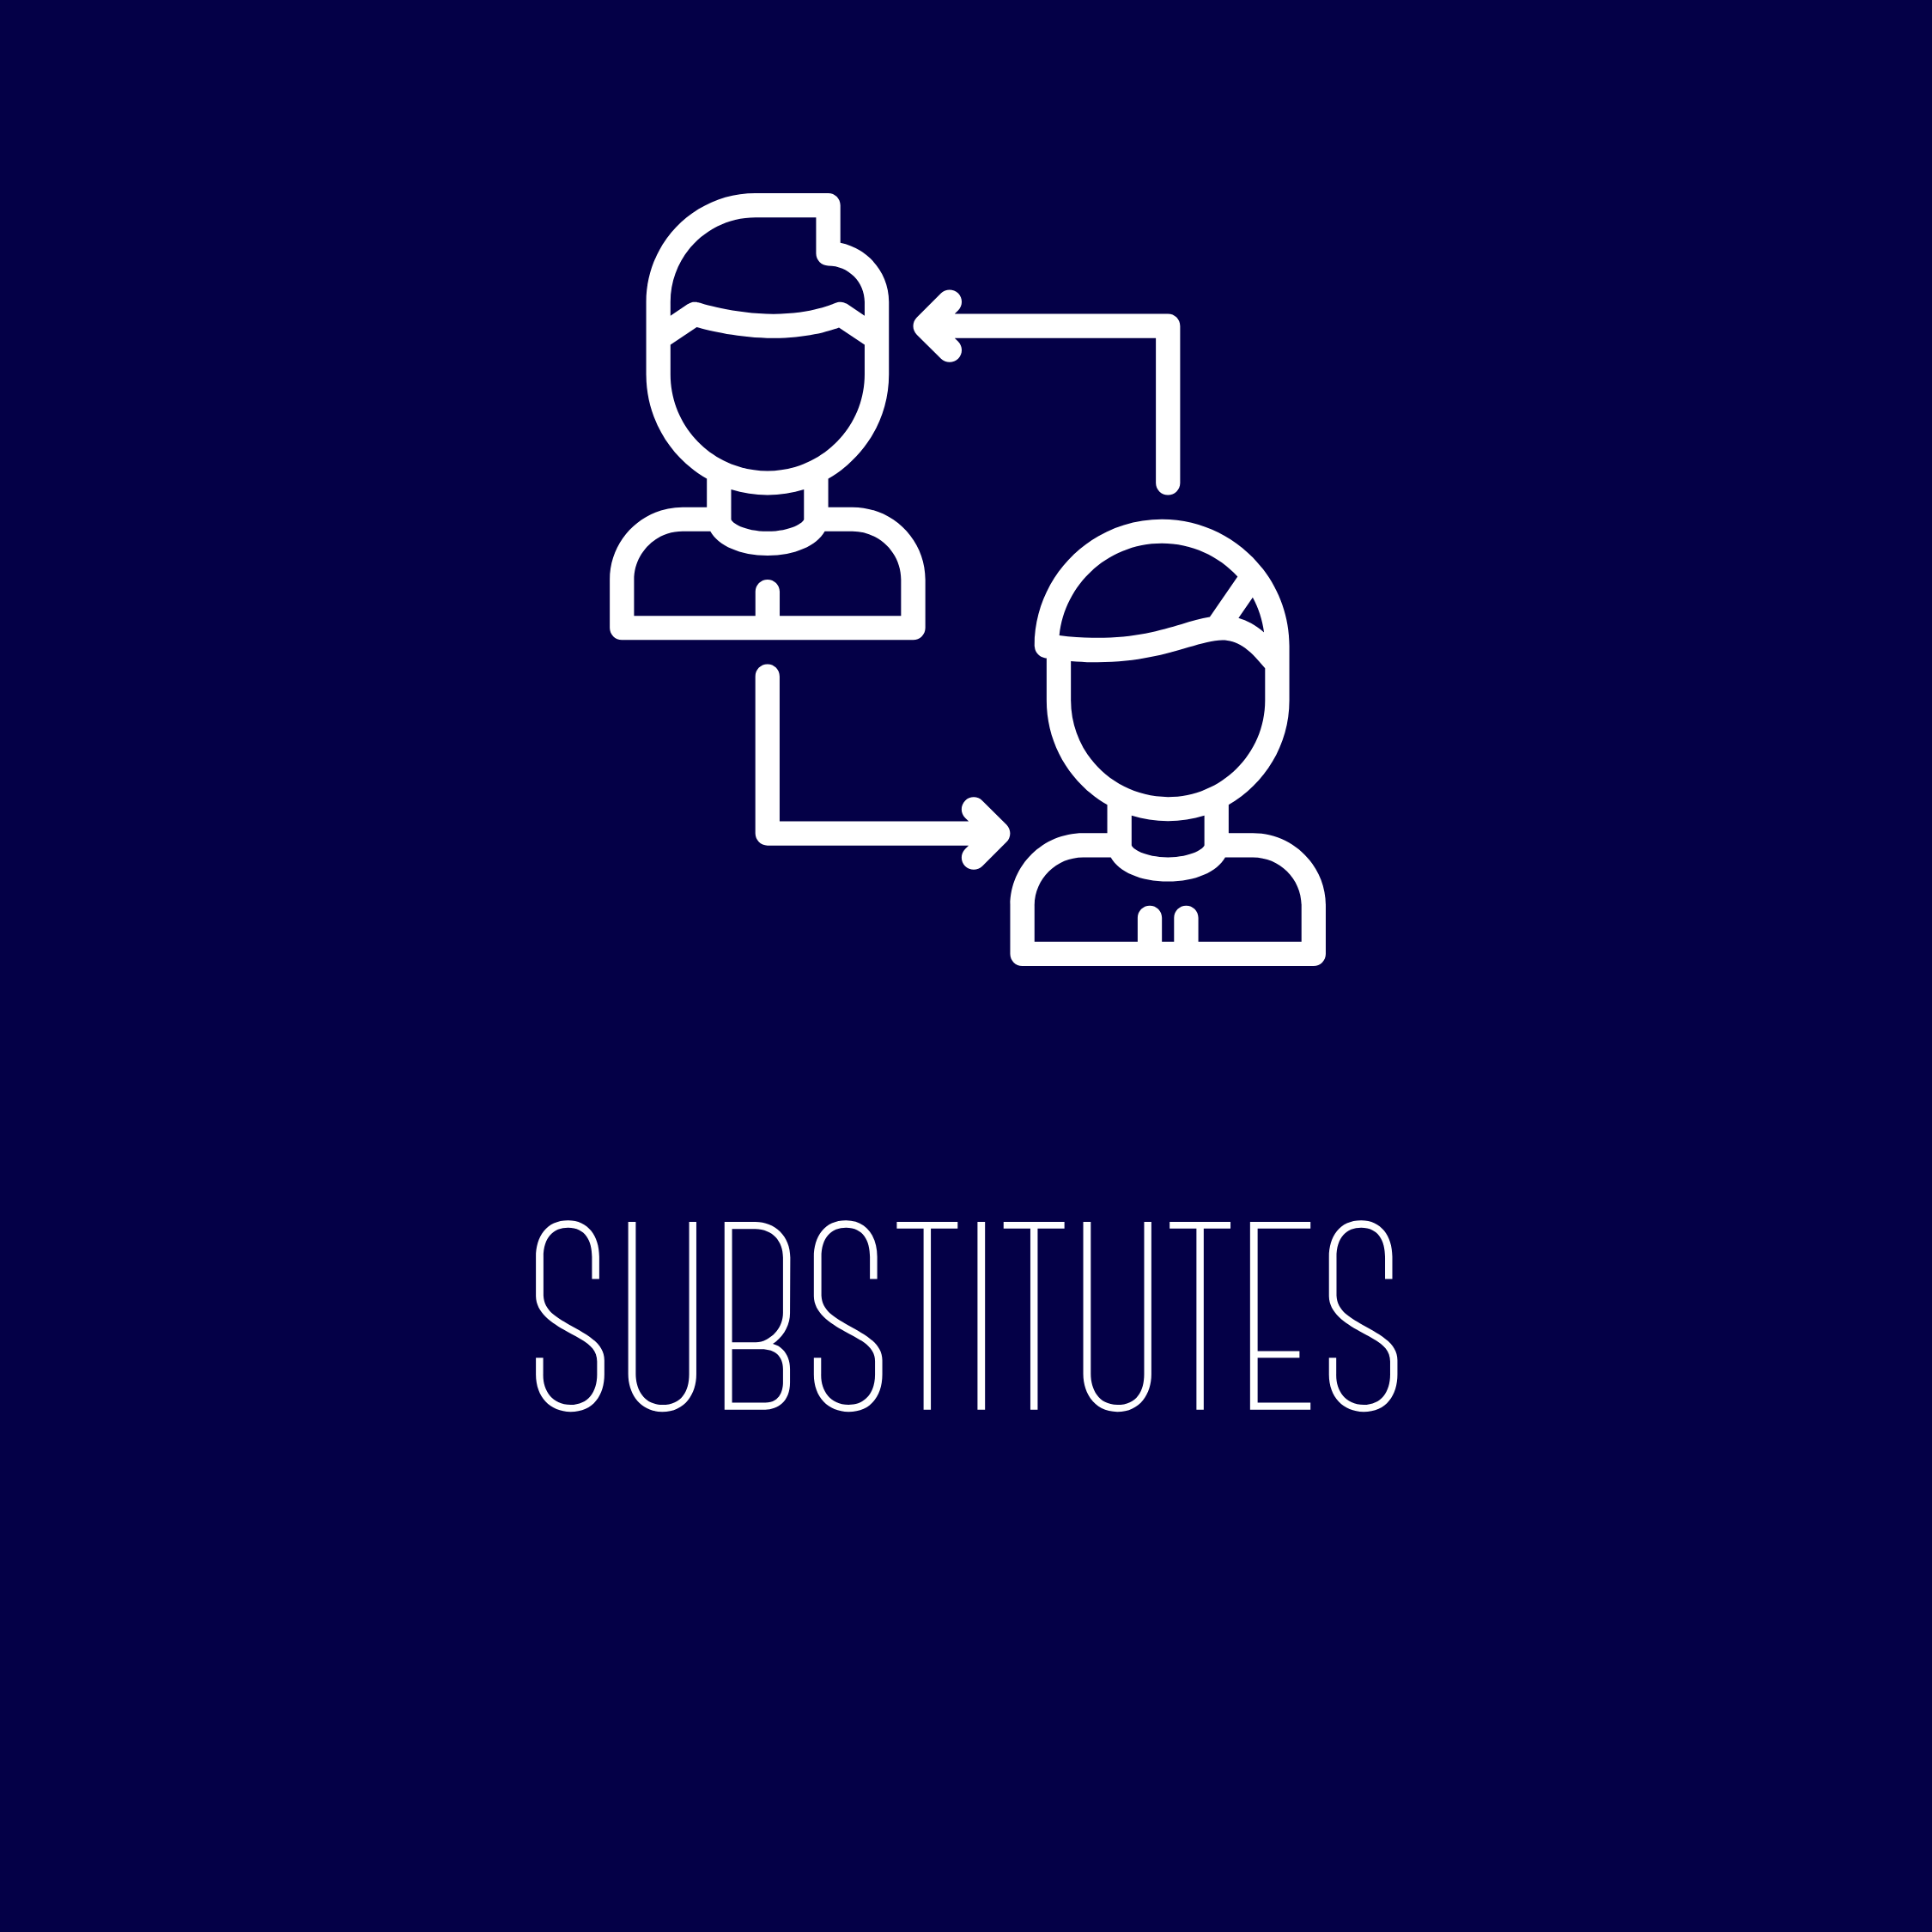 Substitutes